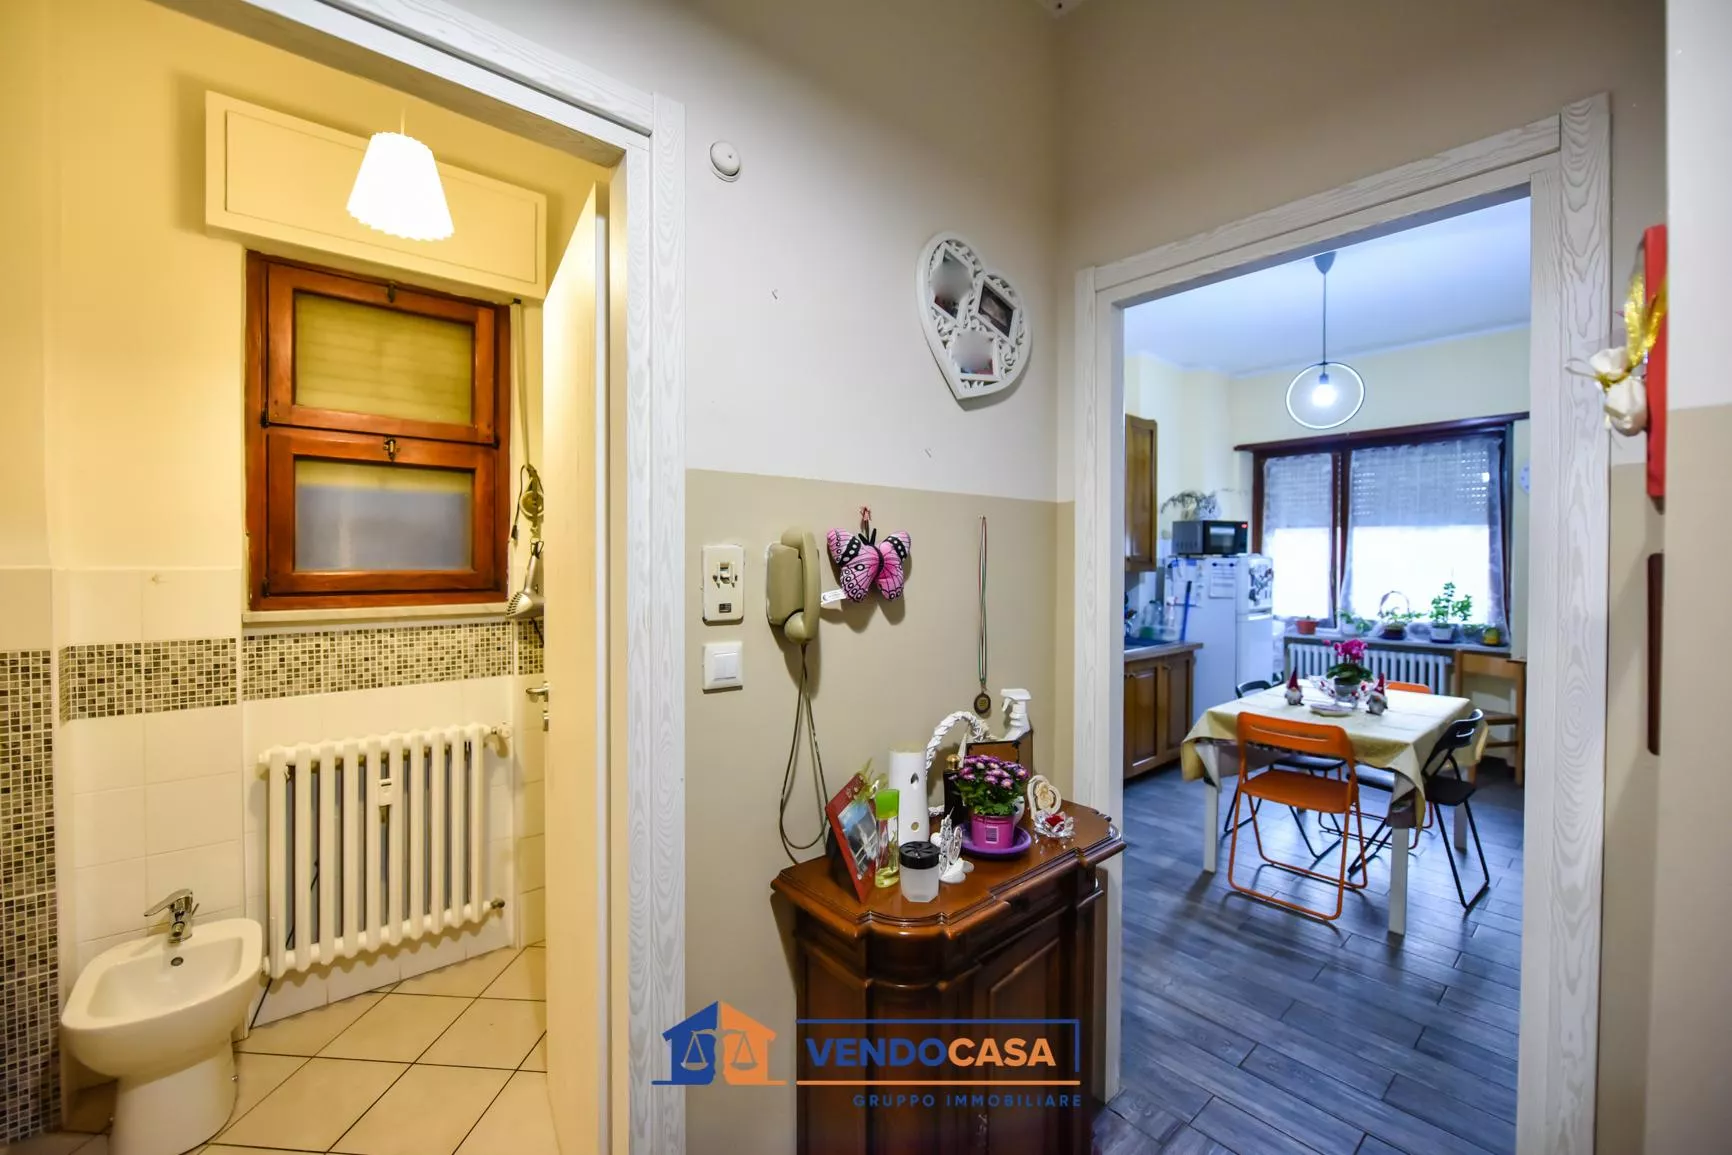 Immagine per Appartamento in vendita a Villastellone via Mazzini 9